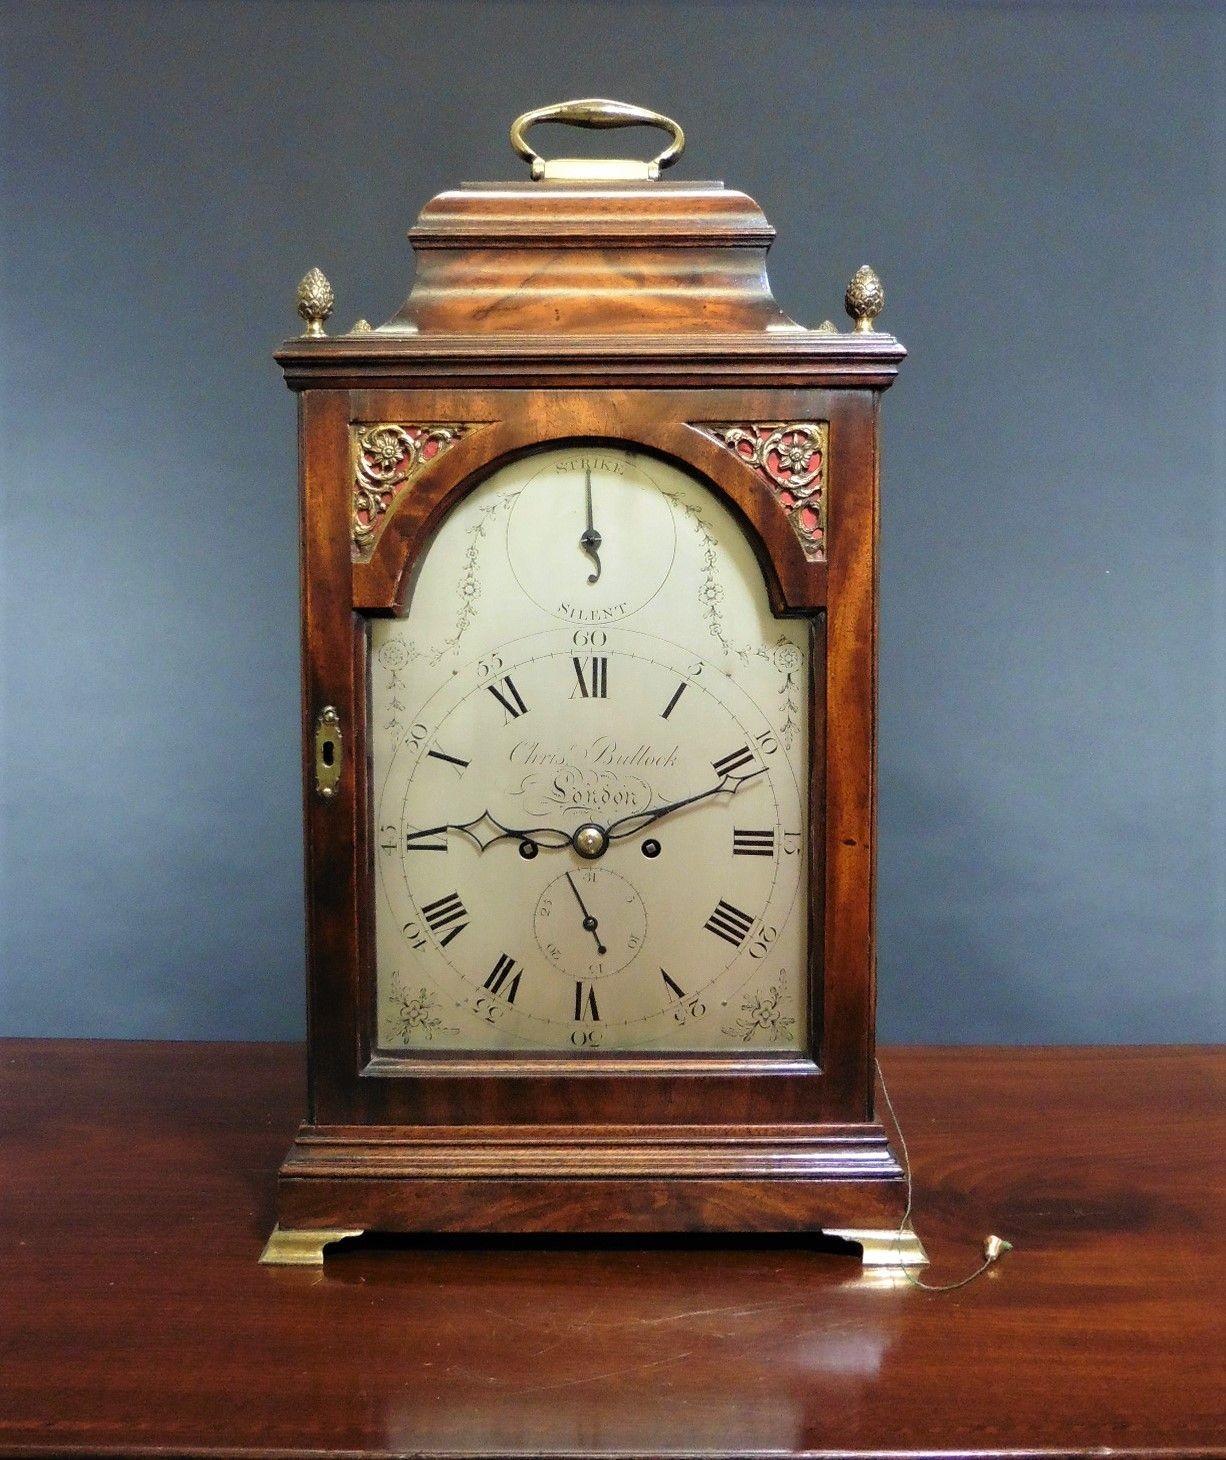 Horloge à console George III par Christopher Bullock, Londres

Coffret à clochettes en acajou finement figuré avec quatre fleurons 